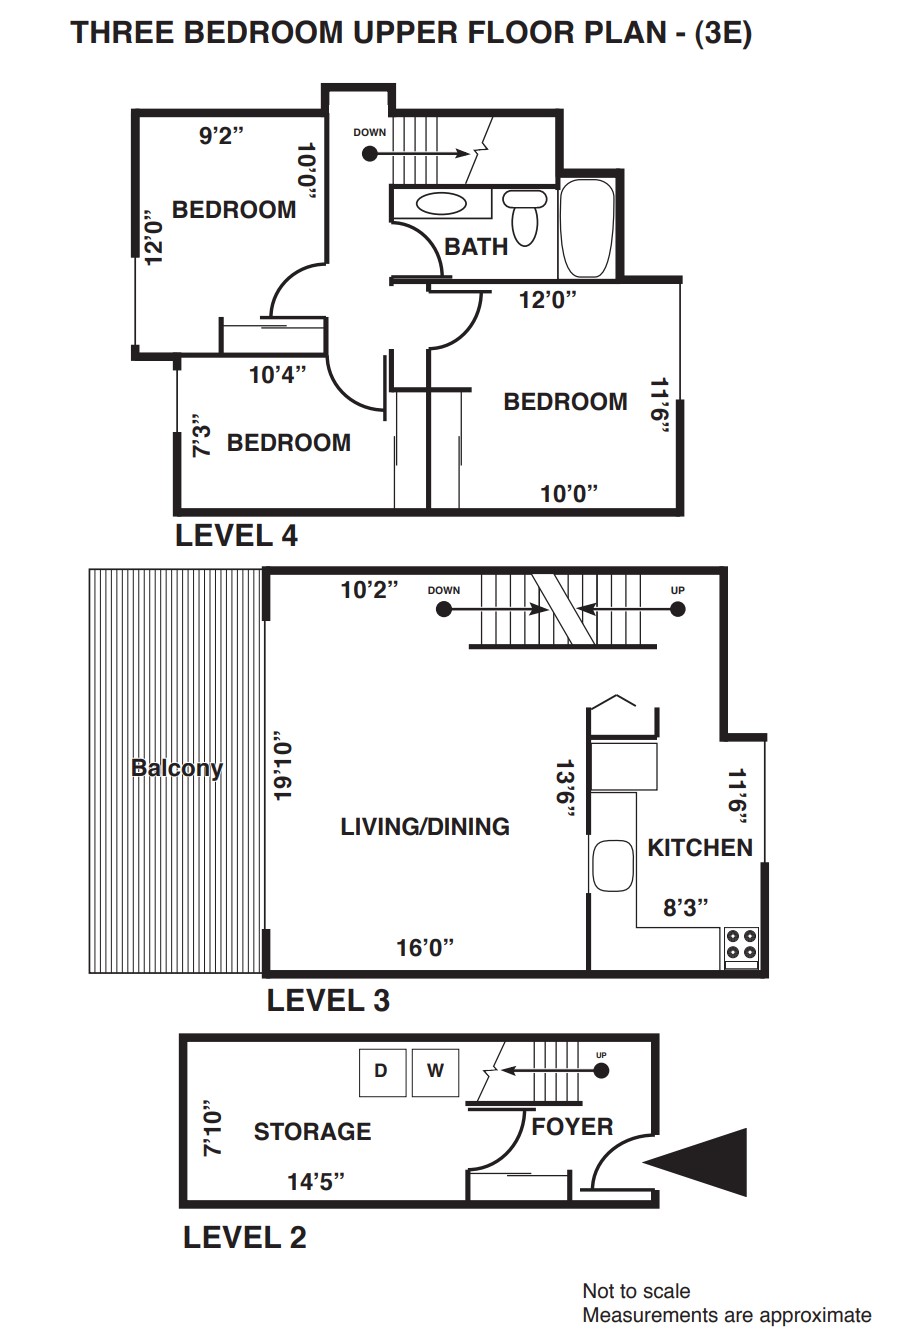 3 bedroom upper floor plan